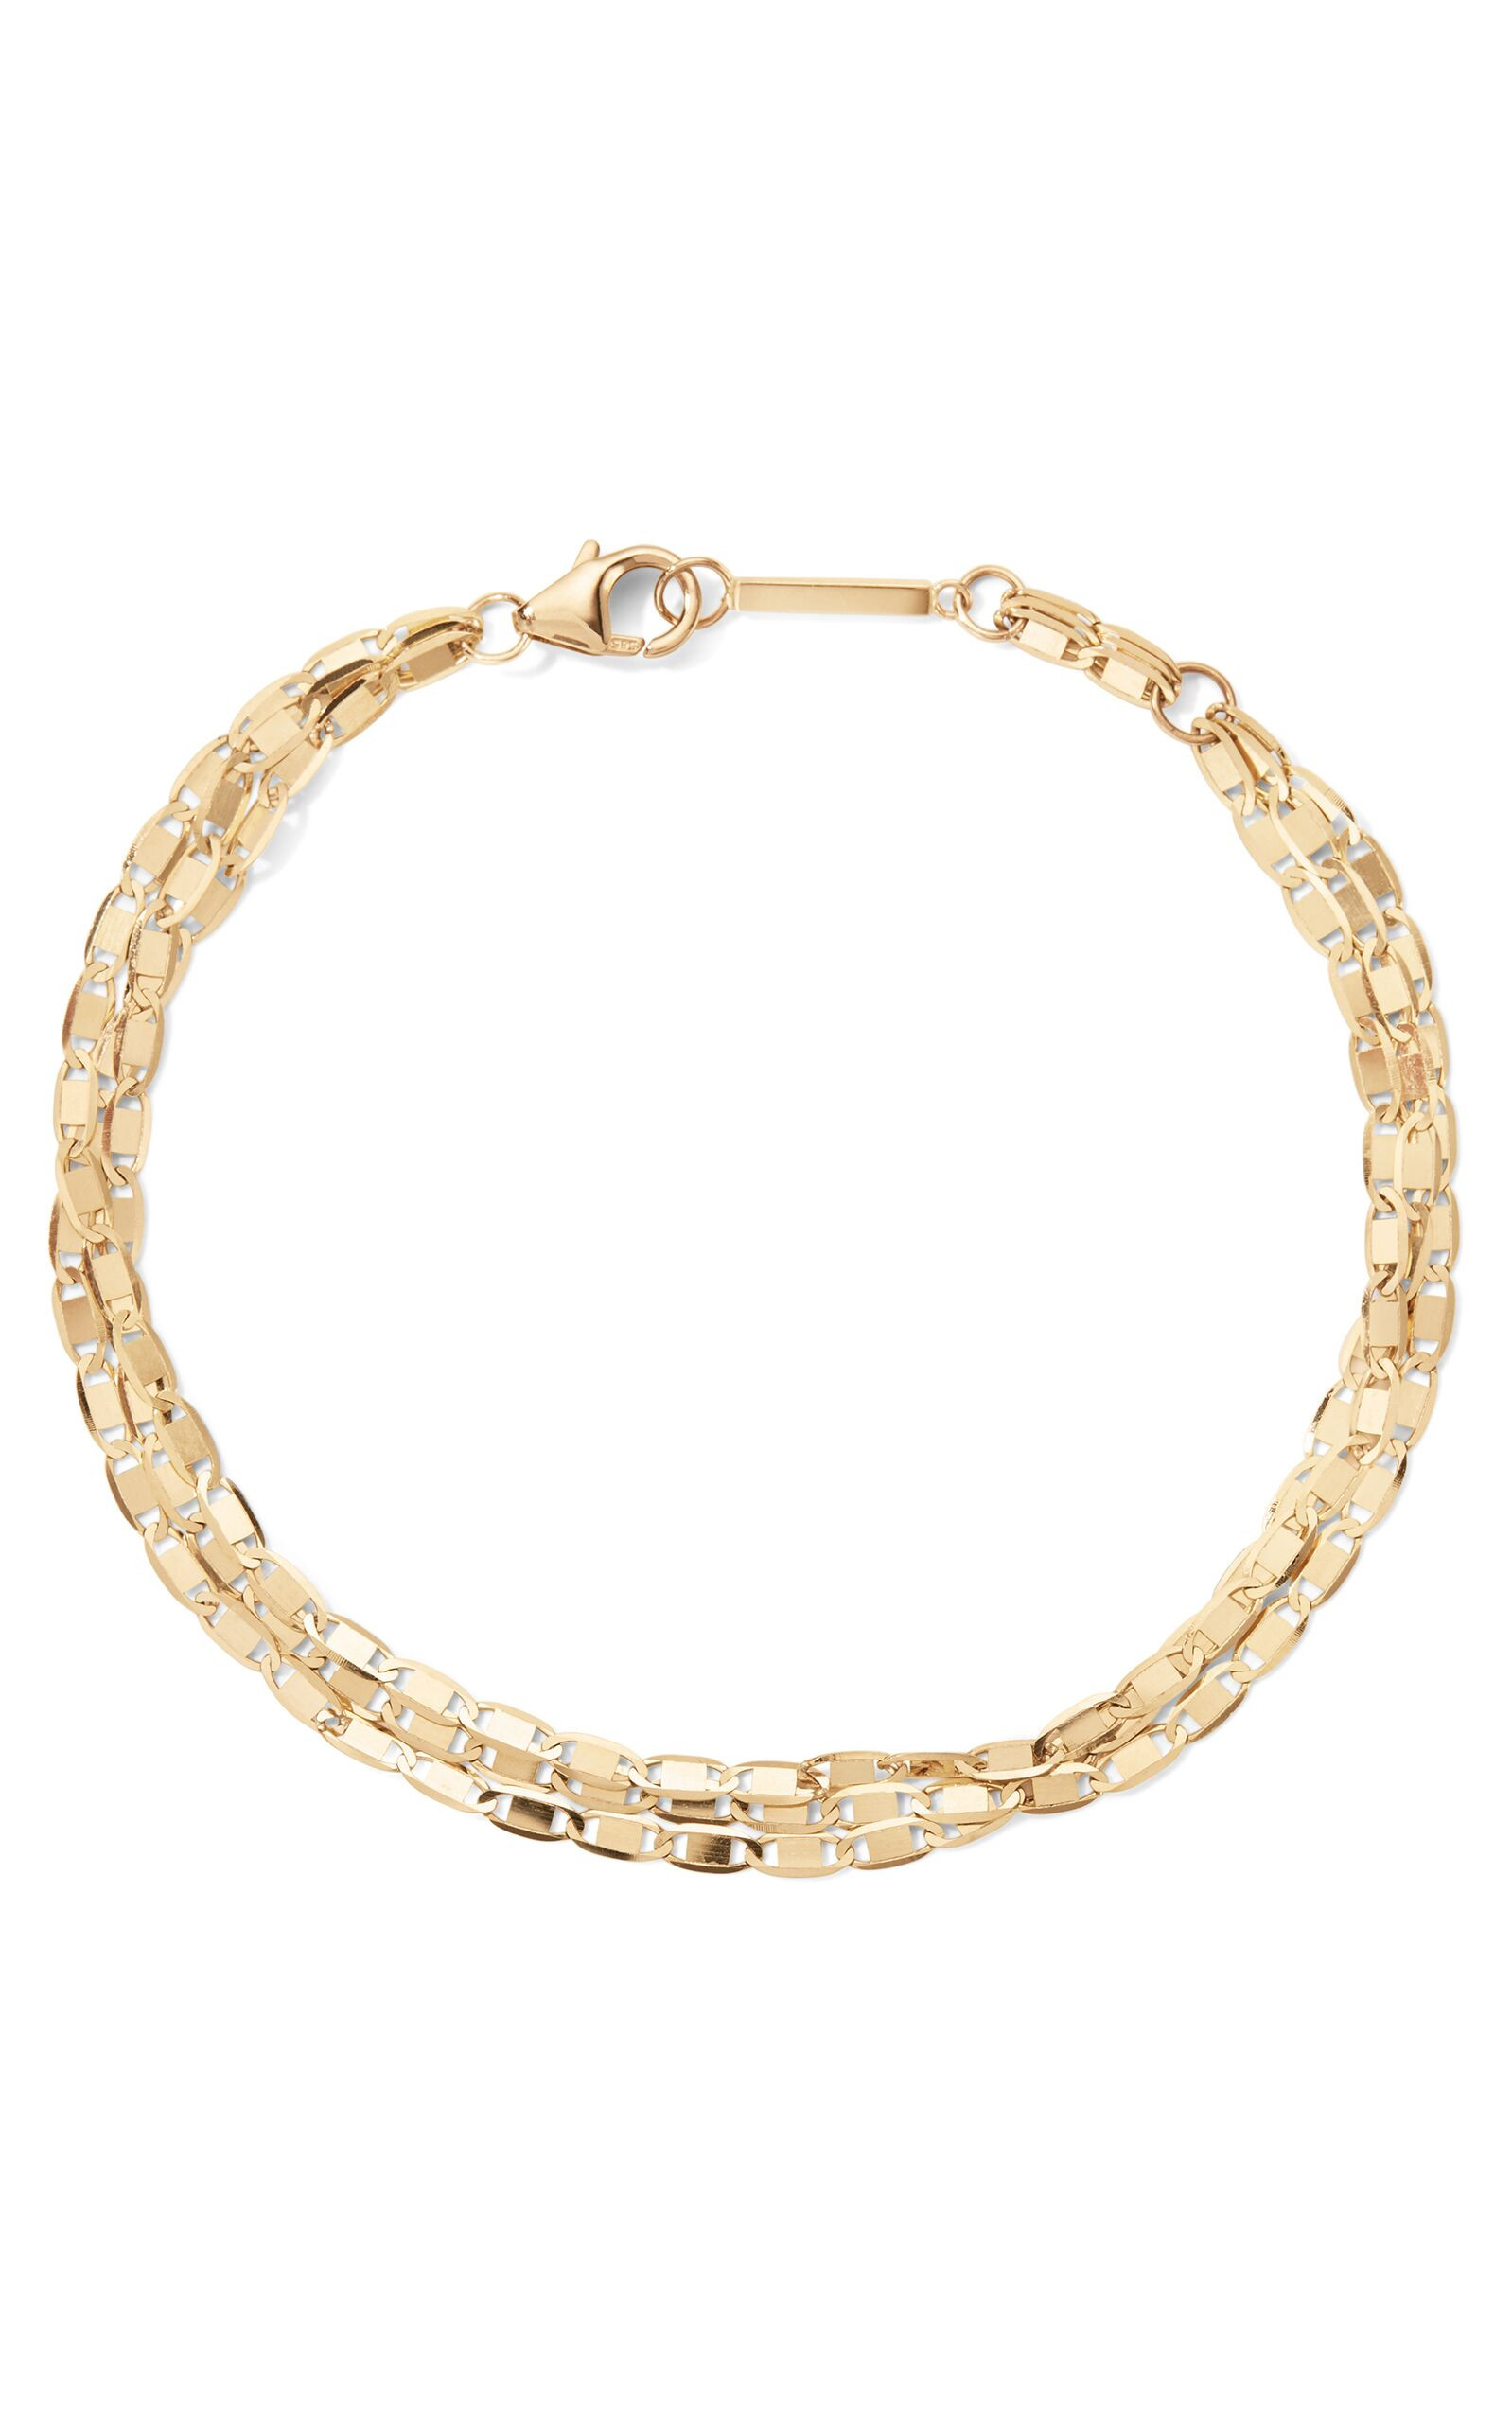 Lana Nude Chain Bracelet in 14K Gold